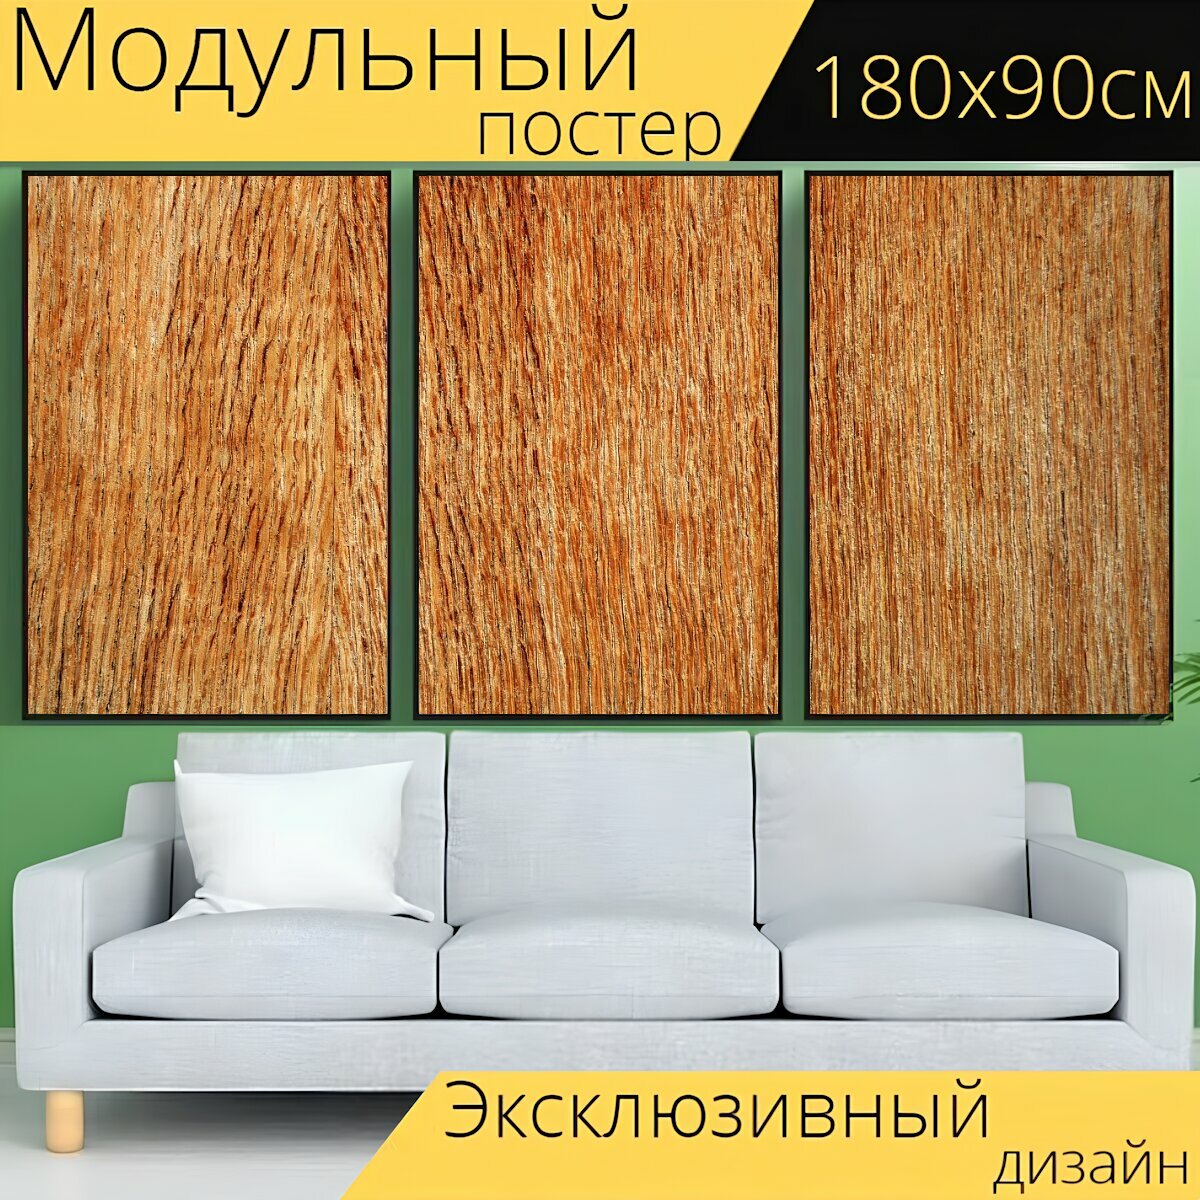 Модульный постер "Фанера, древесина, текстура" 180 x 90 см. для интерьера